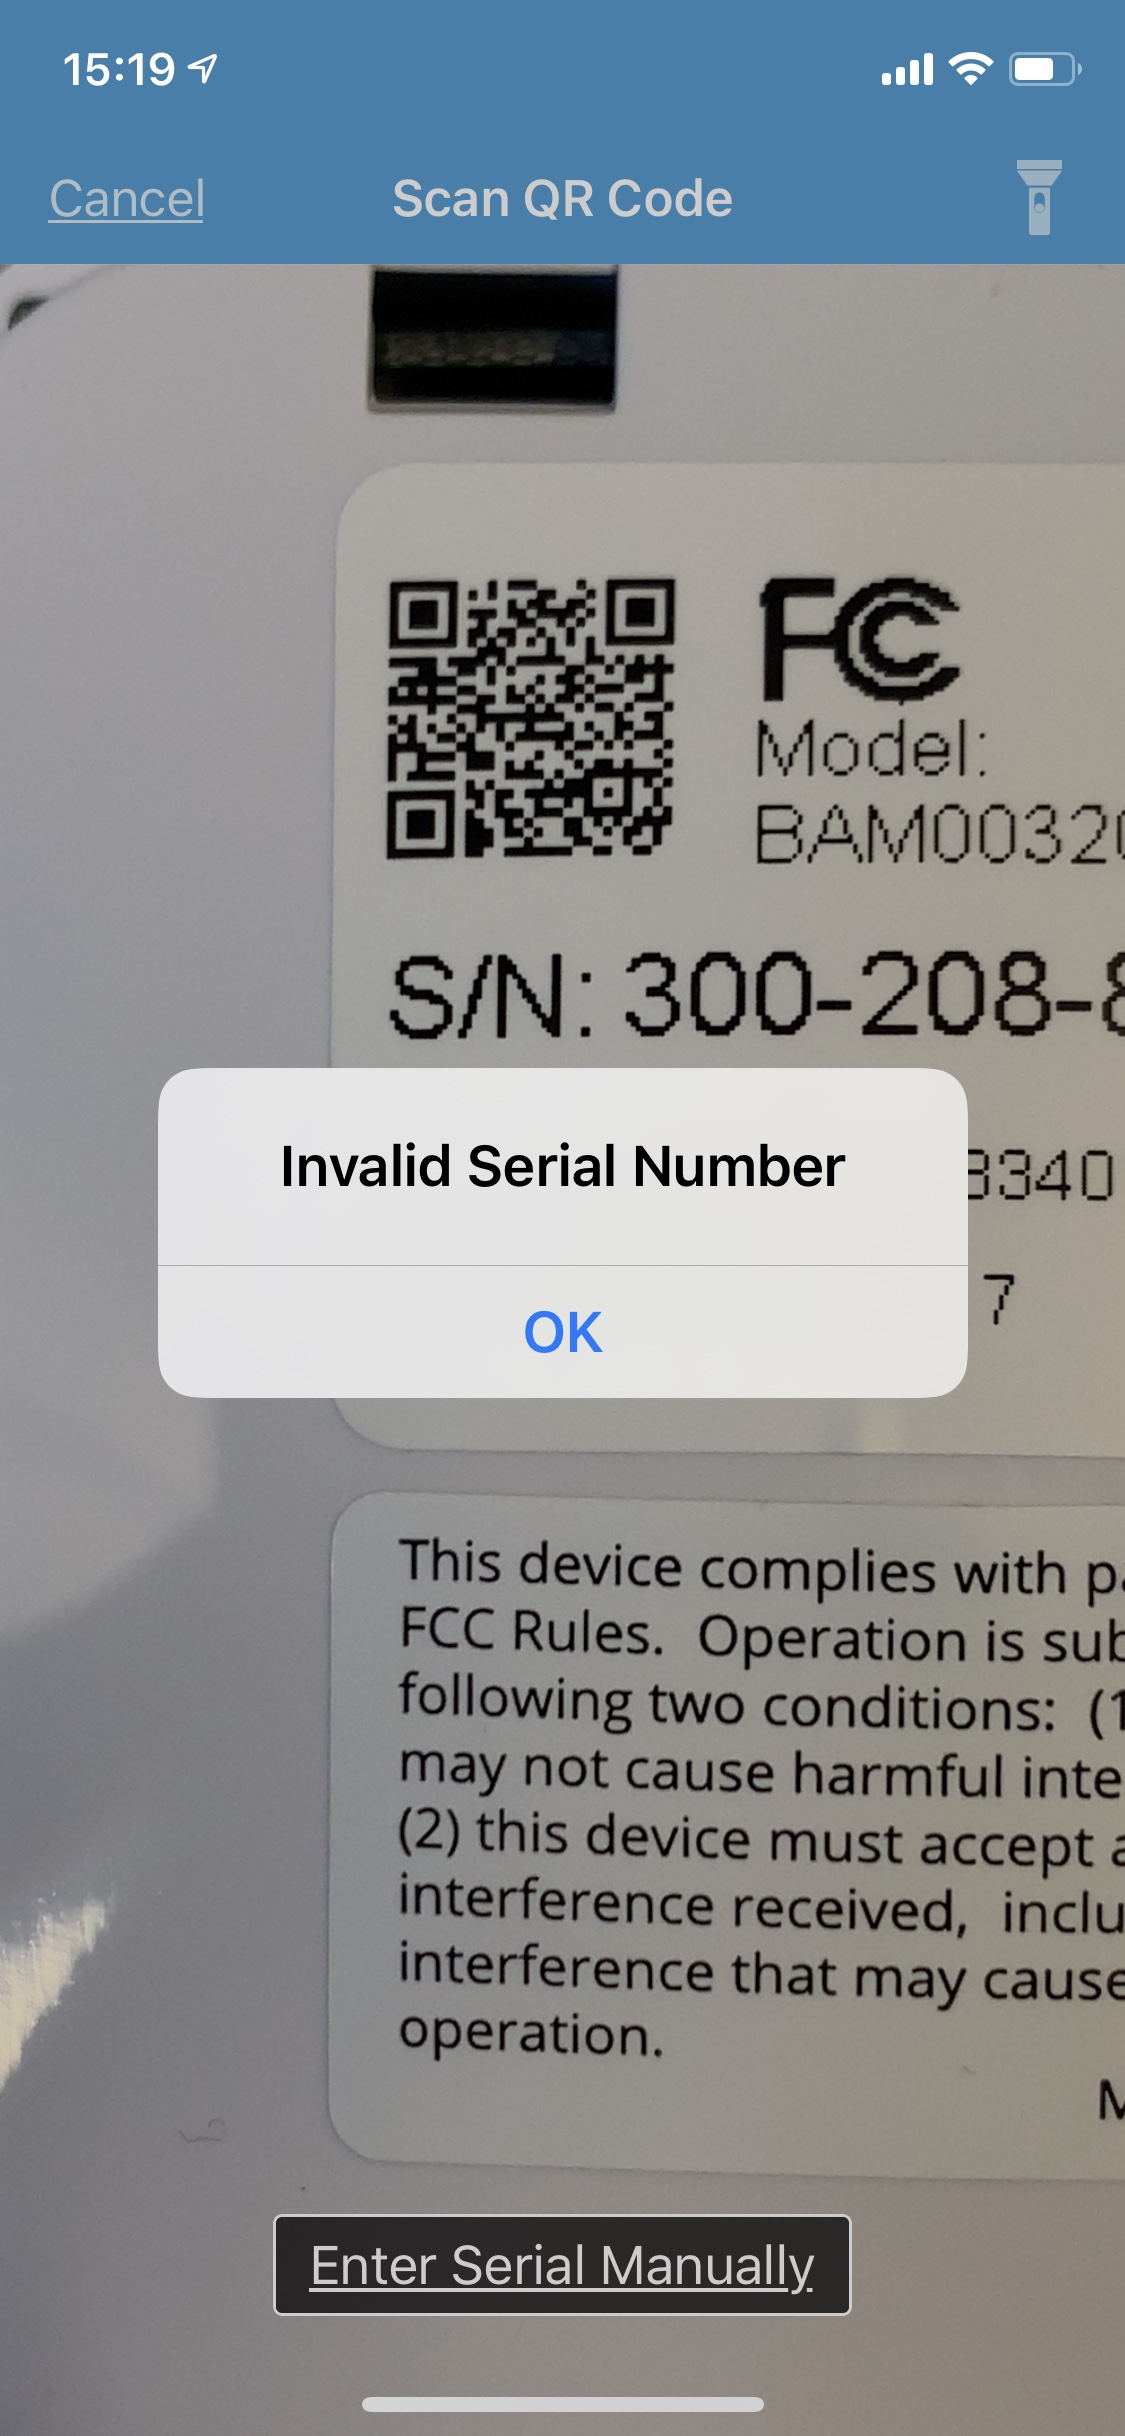 vectorworks invalid serial number